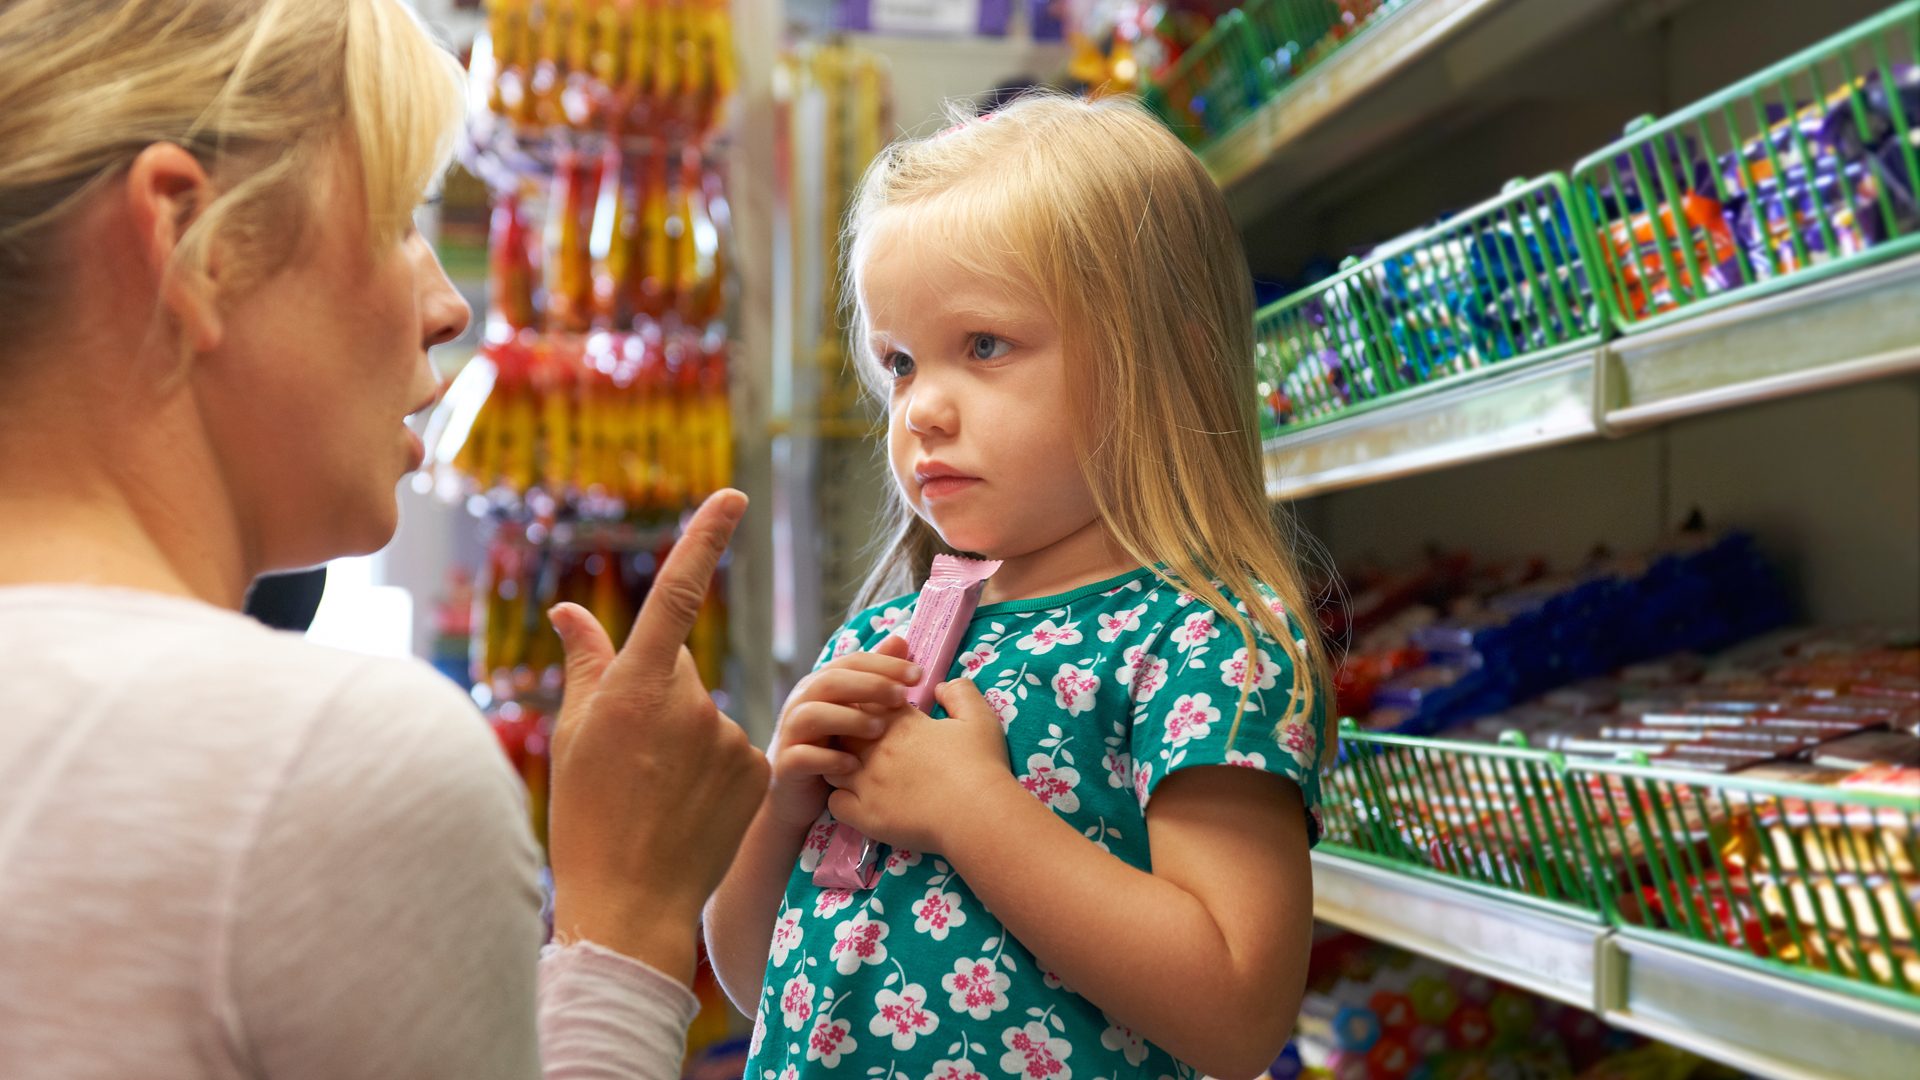 Umfrage zu Impulsware: Mehrheit will keine Süßwaren, Alkohol und Tabak an der Supermarktkasse